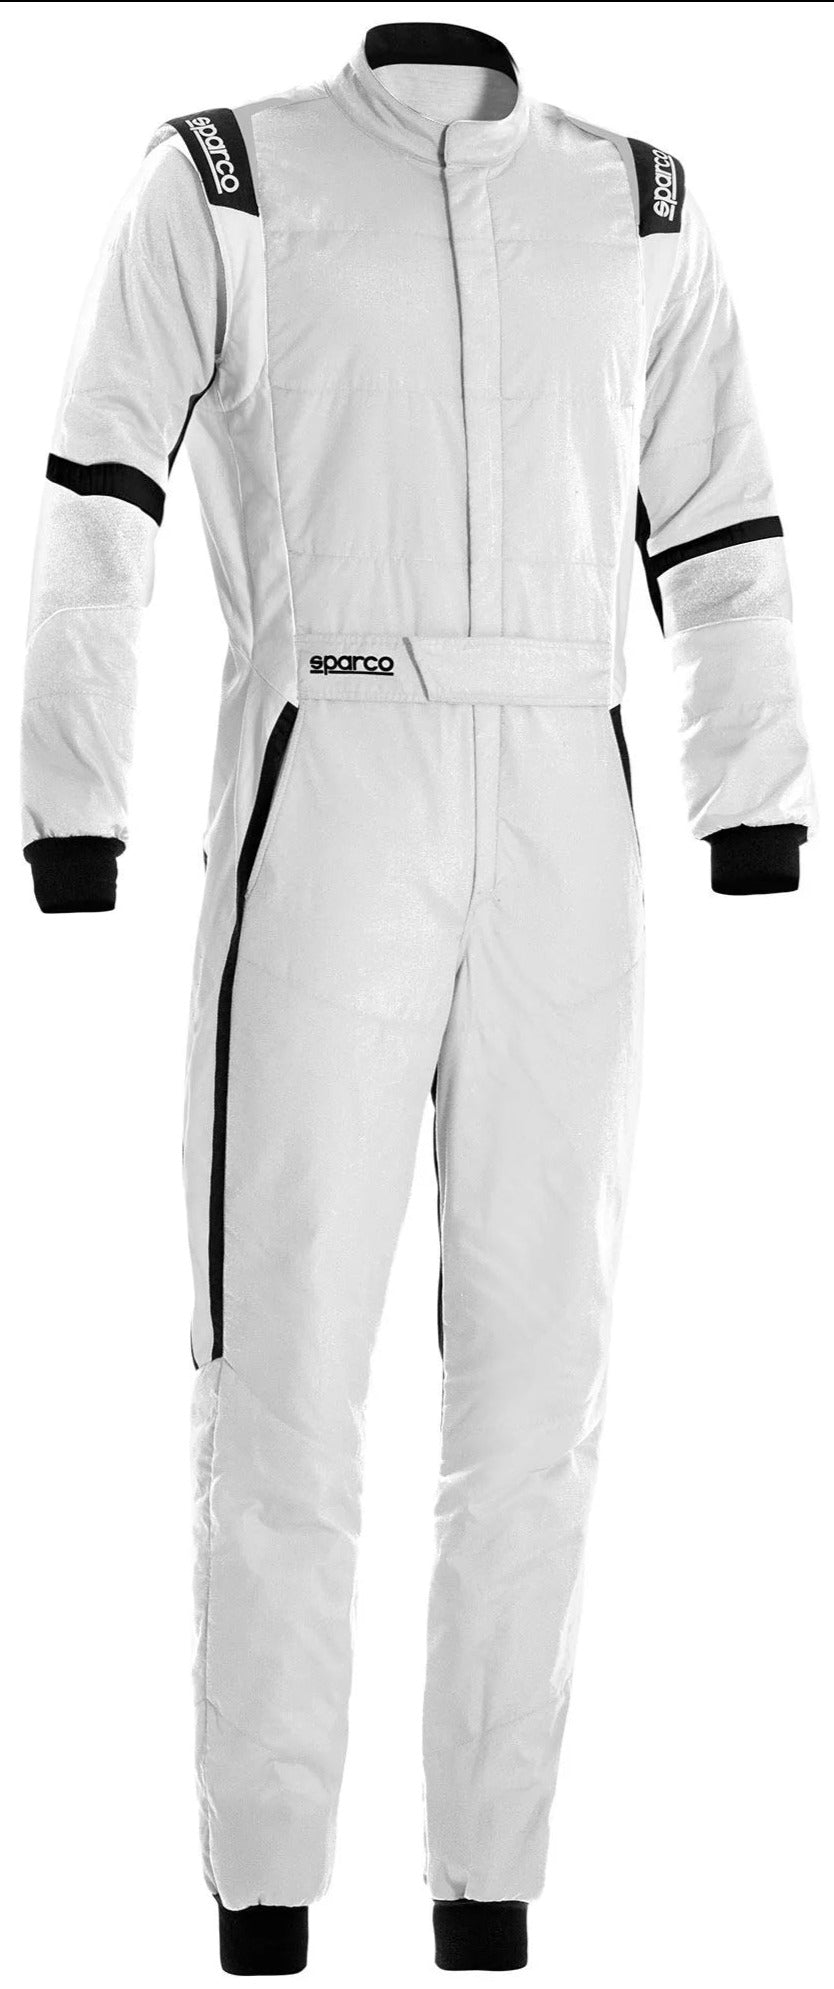 Sparco X-Light Race Suit White / Black Front Image